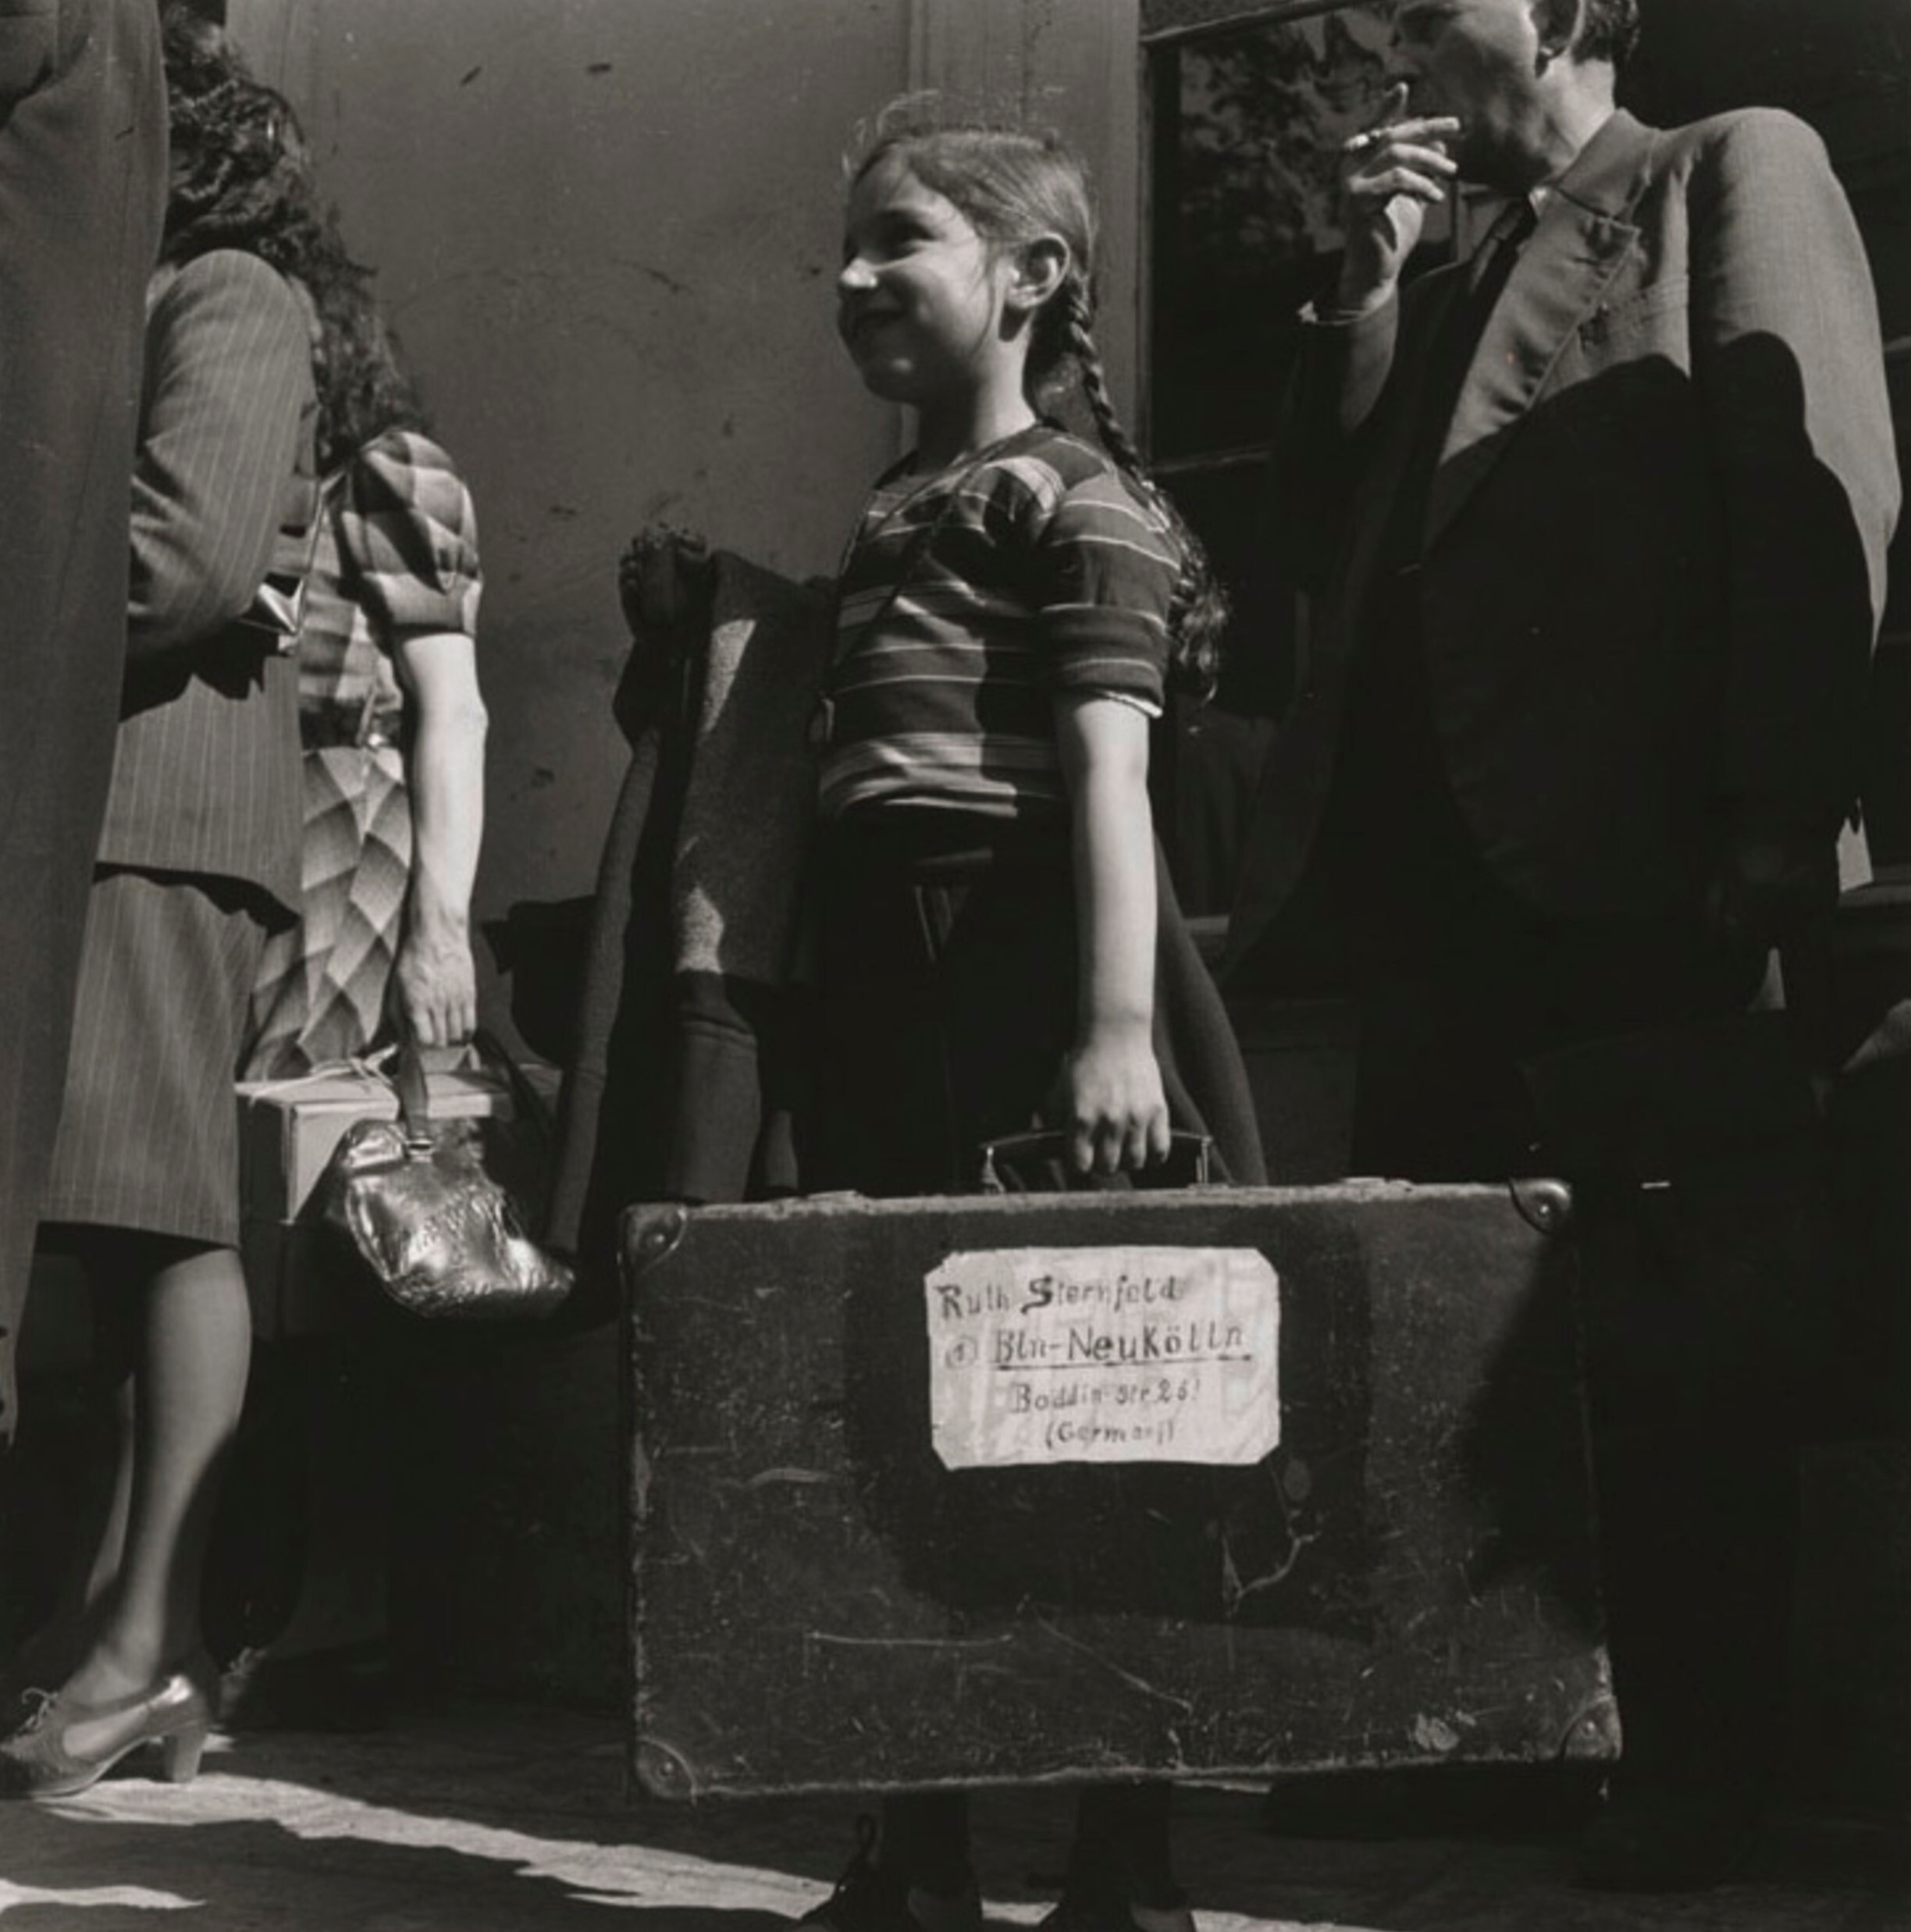 Рут Штернфельд, лагерь для перемещенных лиц Шлахтензее, Целендорф, Берлин, 1947 г. Фотограф Роман Вишняк